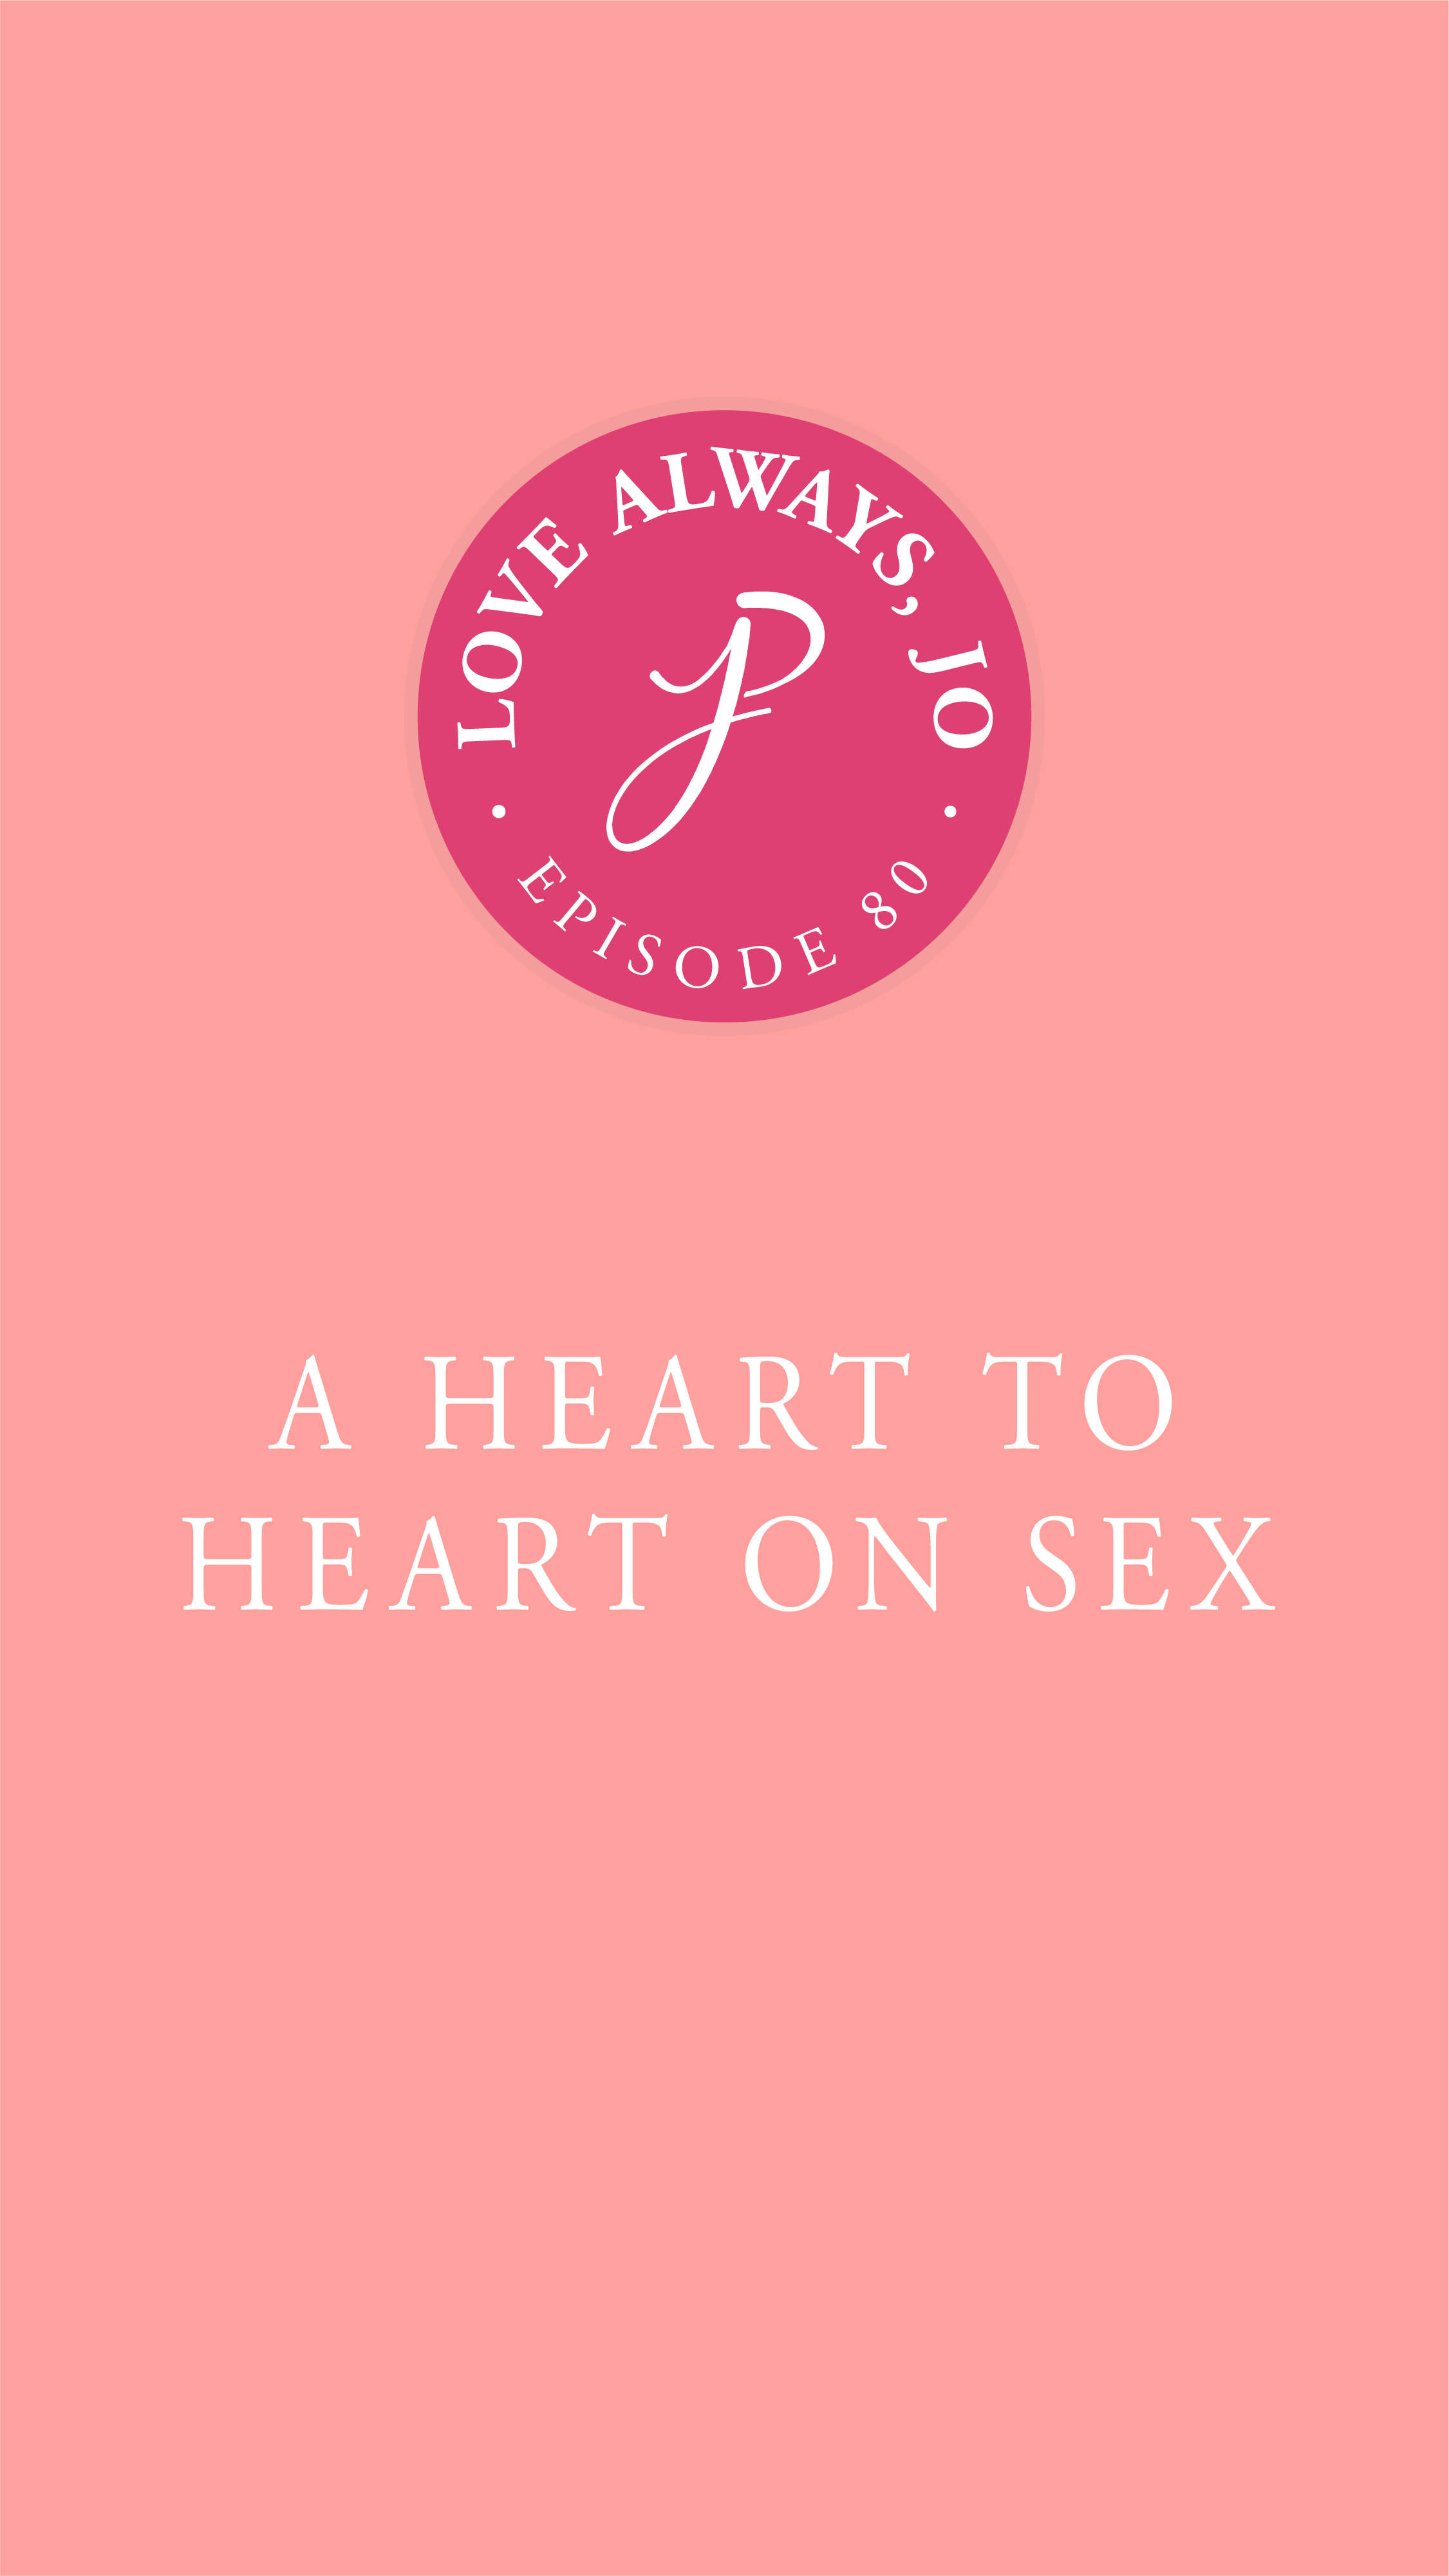 Heart to Heart on Sex | Love Always Jo Episode by Joanna Platt